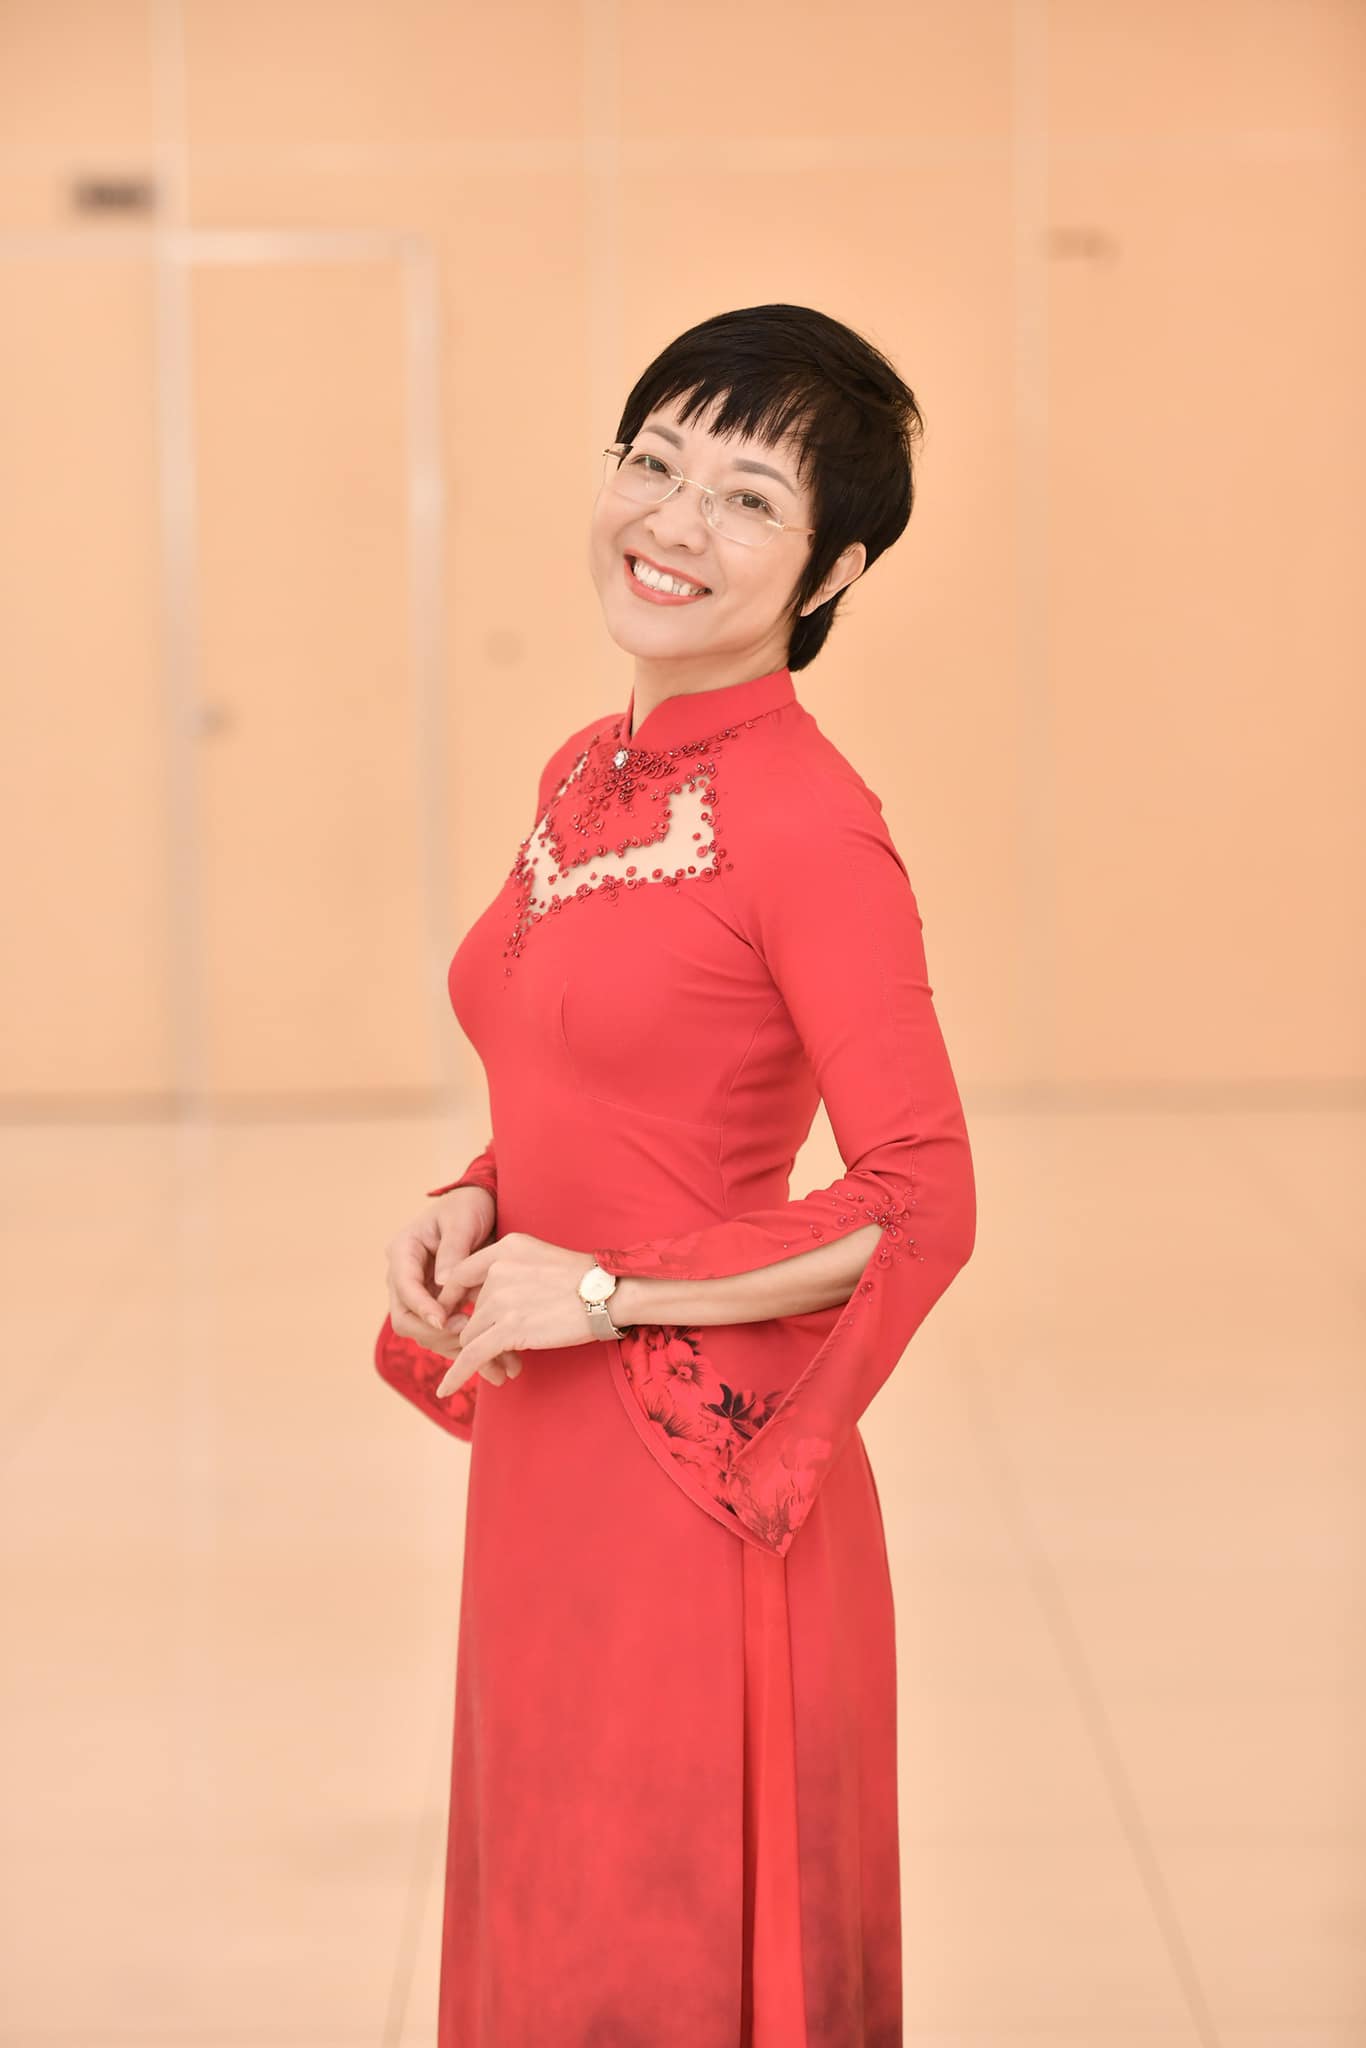 MC Thảo Vân trẻ trung với áo dài đỏ. Ở tuổi 51, ngoài làm MC, cô thử sức với công việc kinh doanh khi cho ra mắt thương hiệu mỹ phẩm từ thiên nhiên.